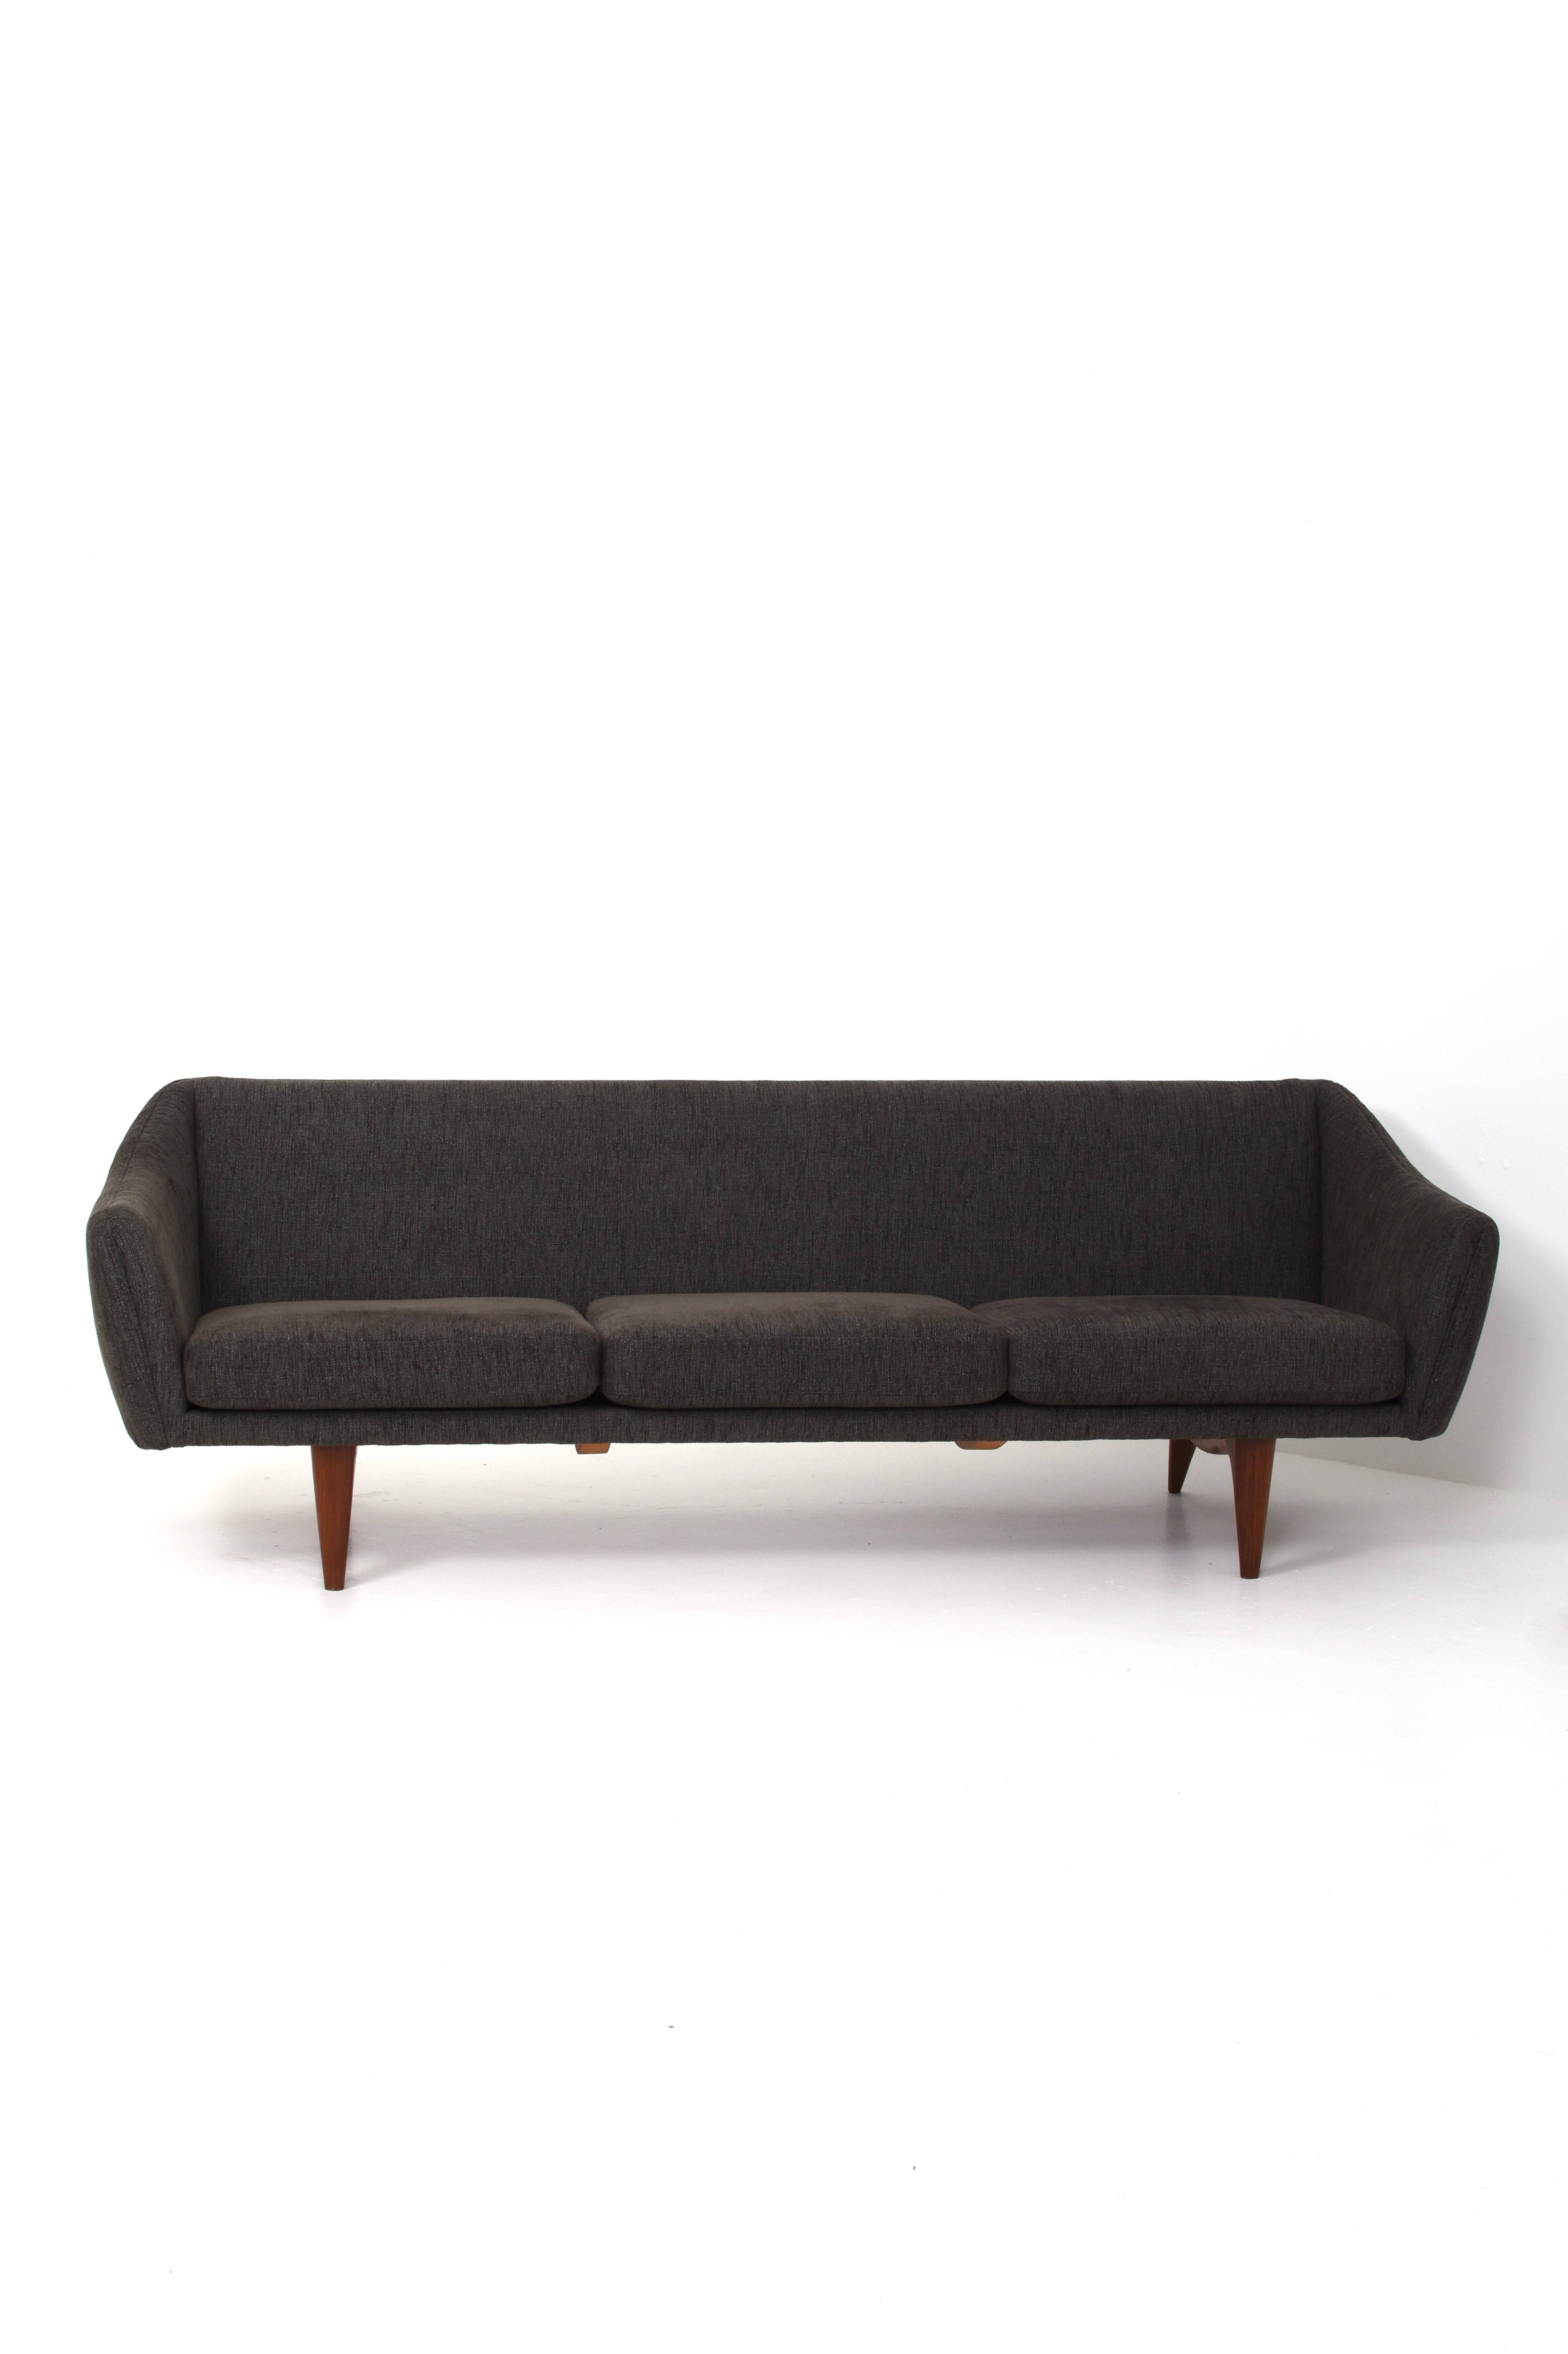  Sofa model Ml-140 by Illum Wikkelsø for A. Mikael Laursen & Søn 3